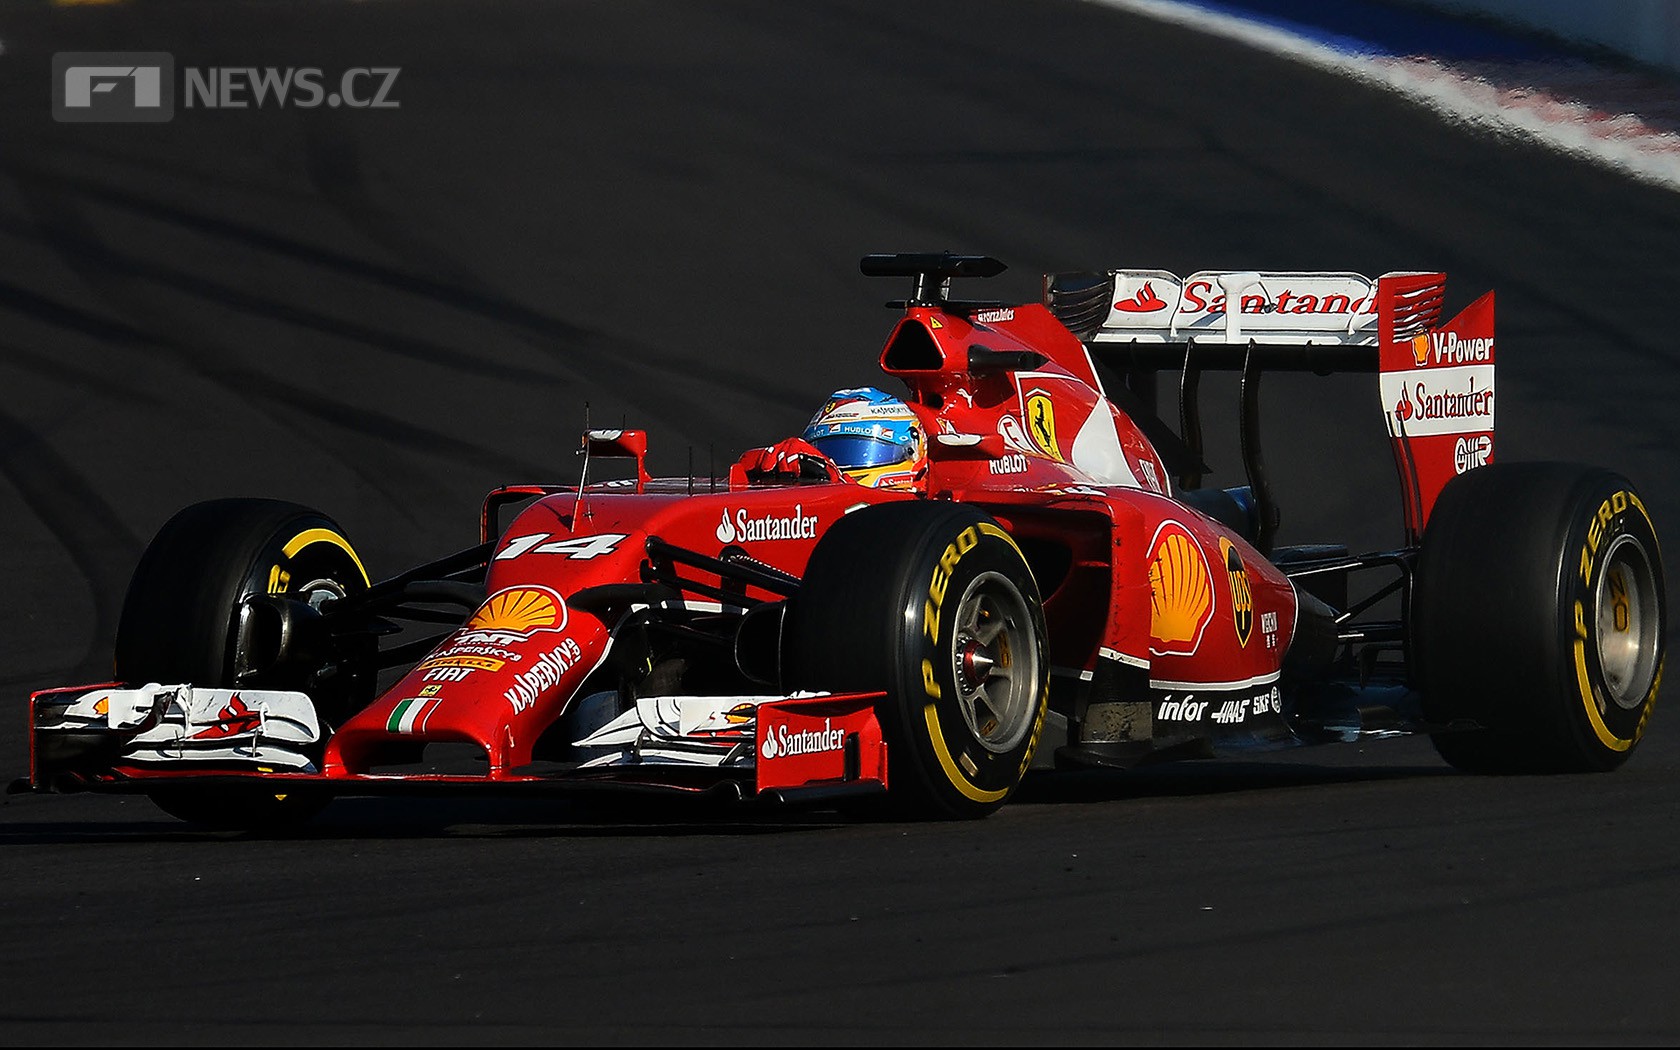 Fernando Alonso Ferrari opustil, u McLarenu ale zatím prožívá další zklamání